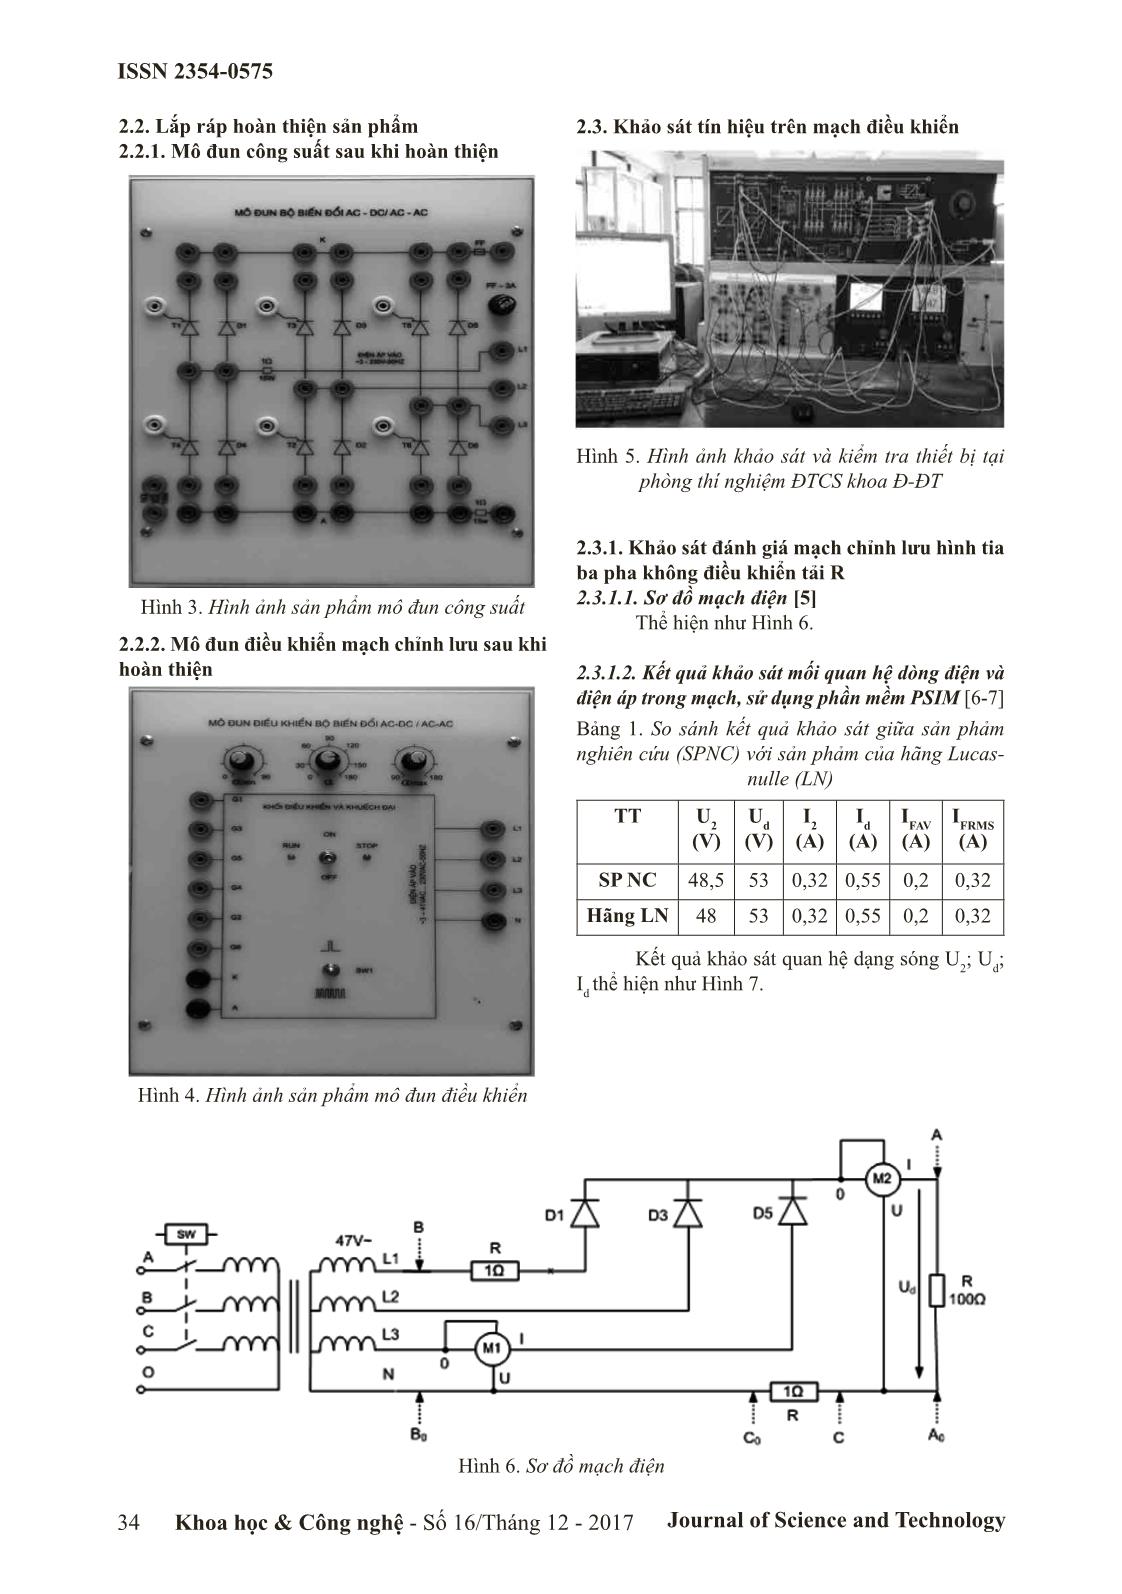 Nghiên cứu, chế tạo thiết bị thí nghiệm các mạch chỉnh lưu không và có điều khiển với mạch một pha và ba pha trang 4